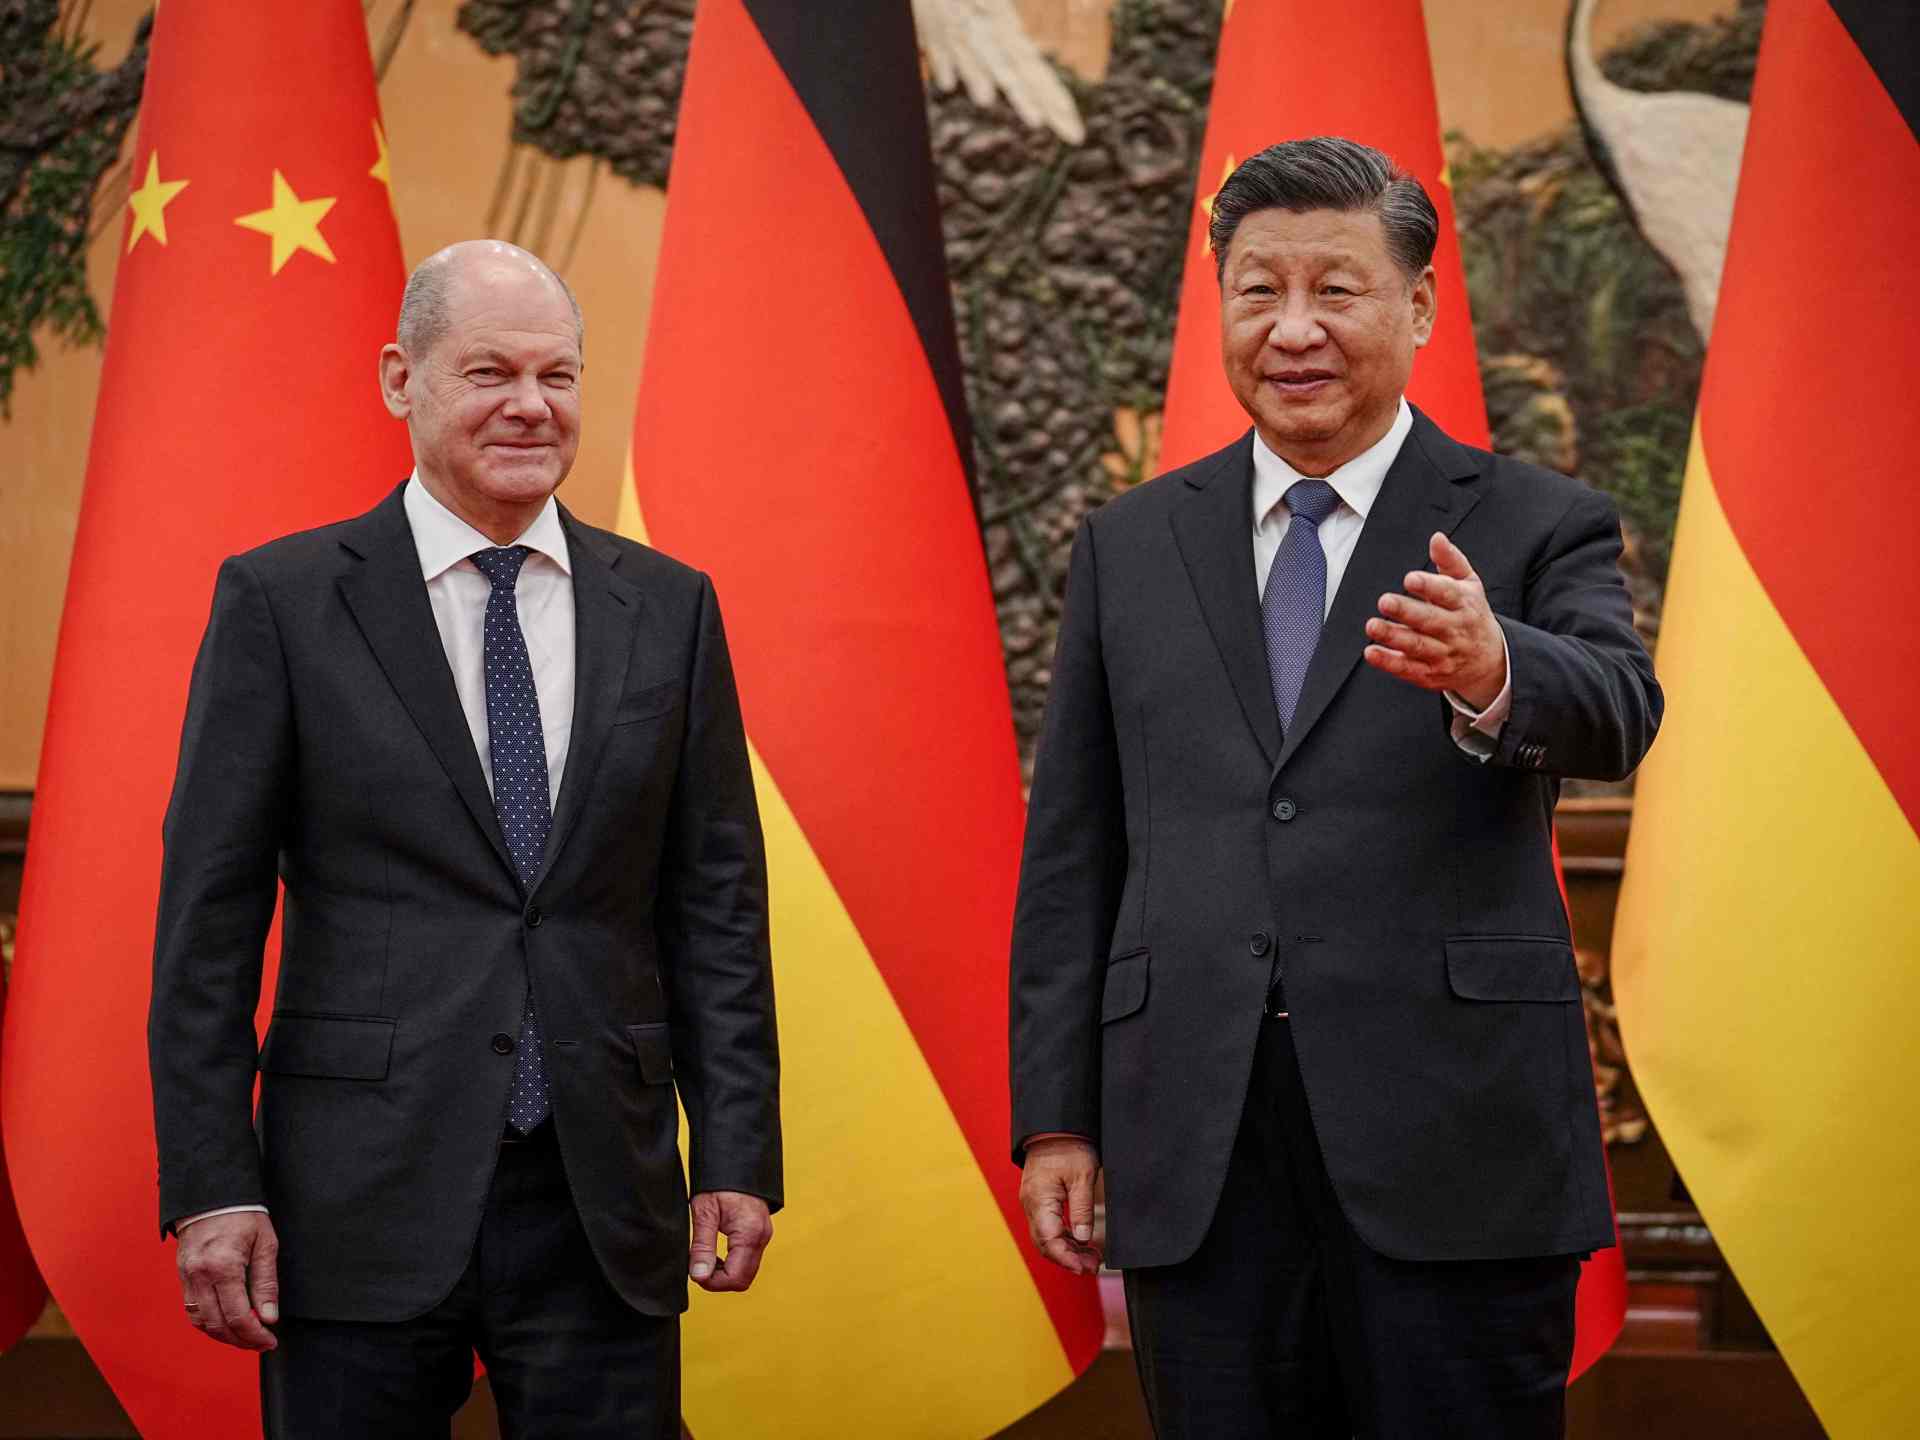 ألمانيا تحض الصين على المساهمة في “سلام عادل” بأوكرانيا | أخبار – البوكس نيوز